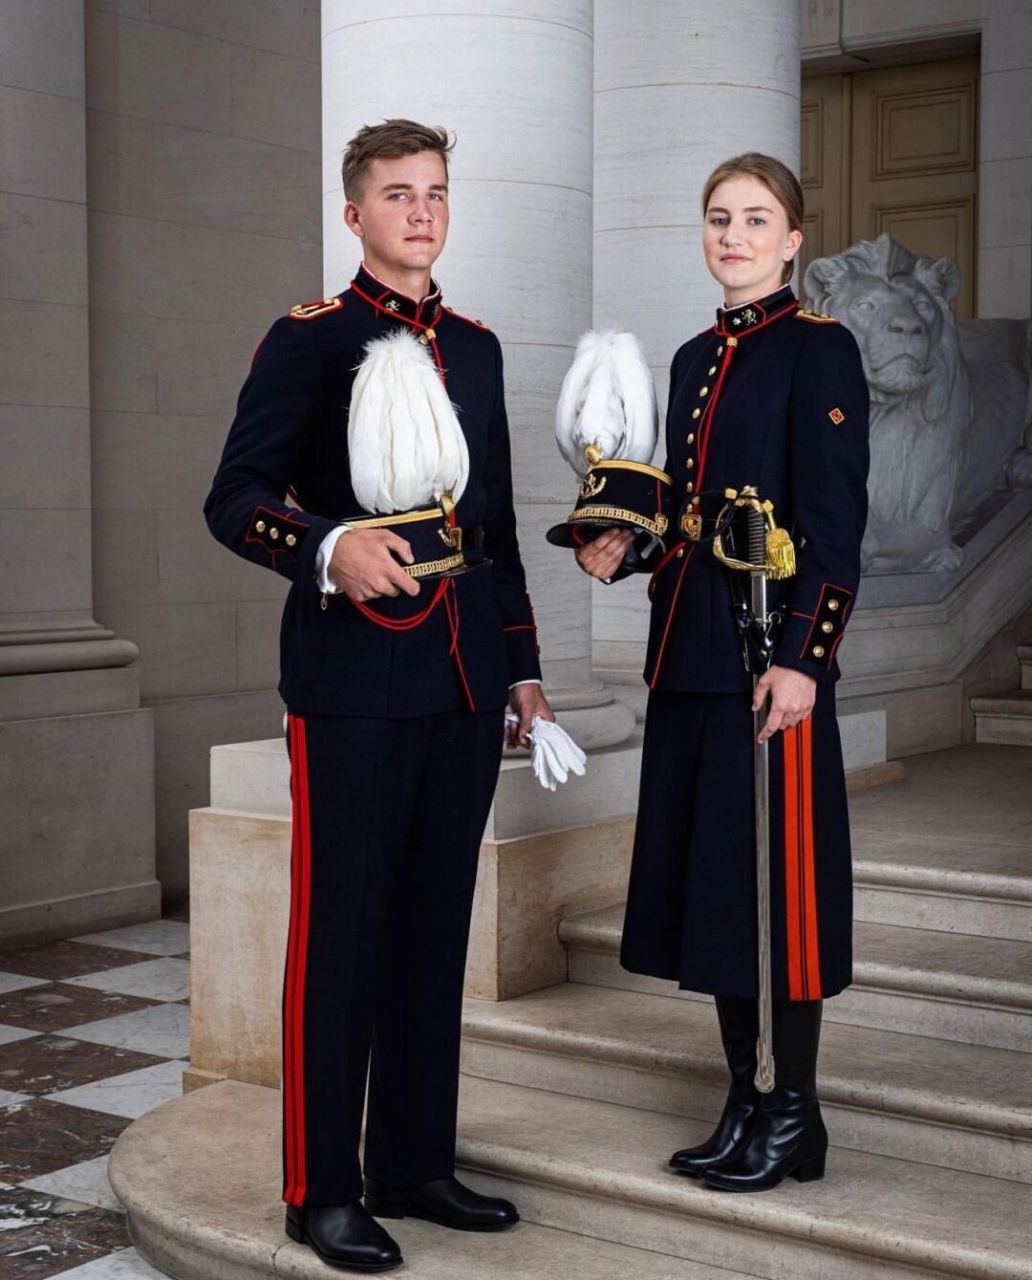 比利时公主的军装照 7月21日比利时国庆节,身着军礼服的比利时公主